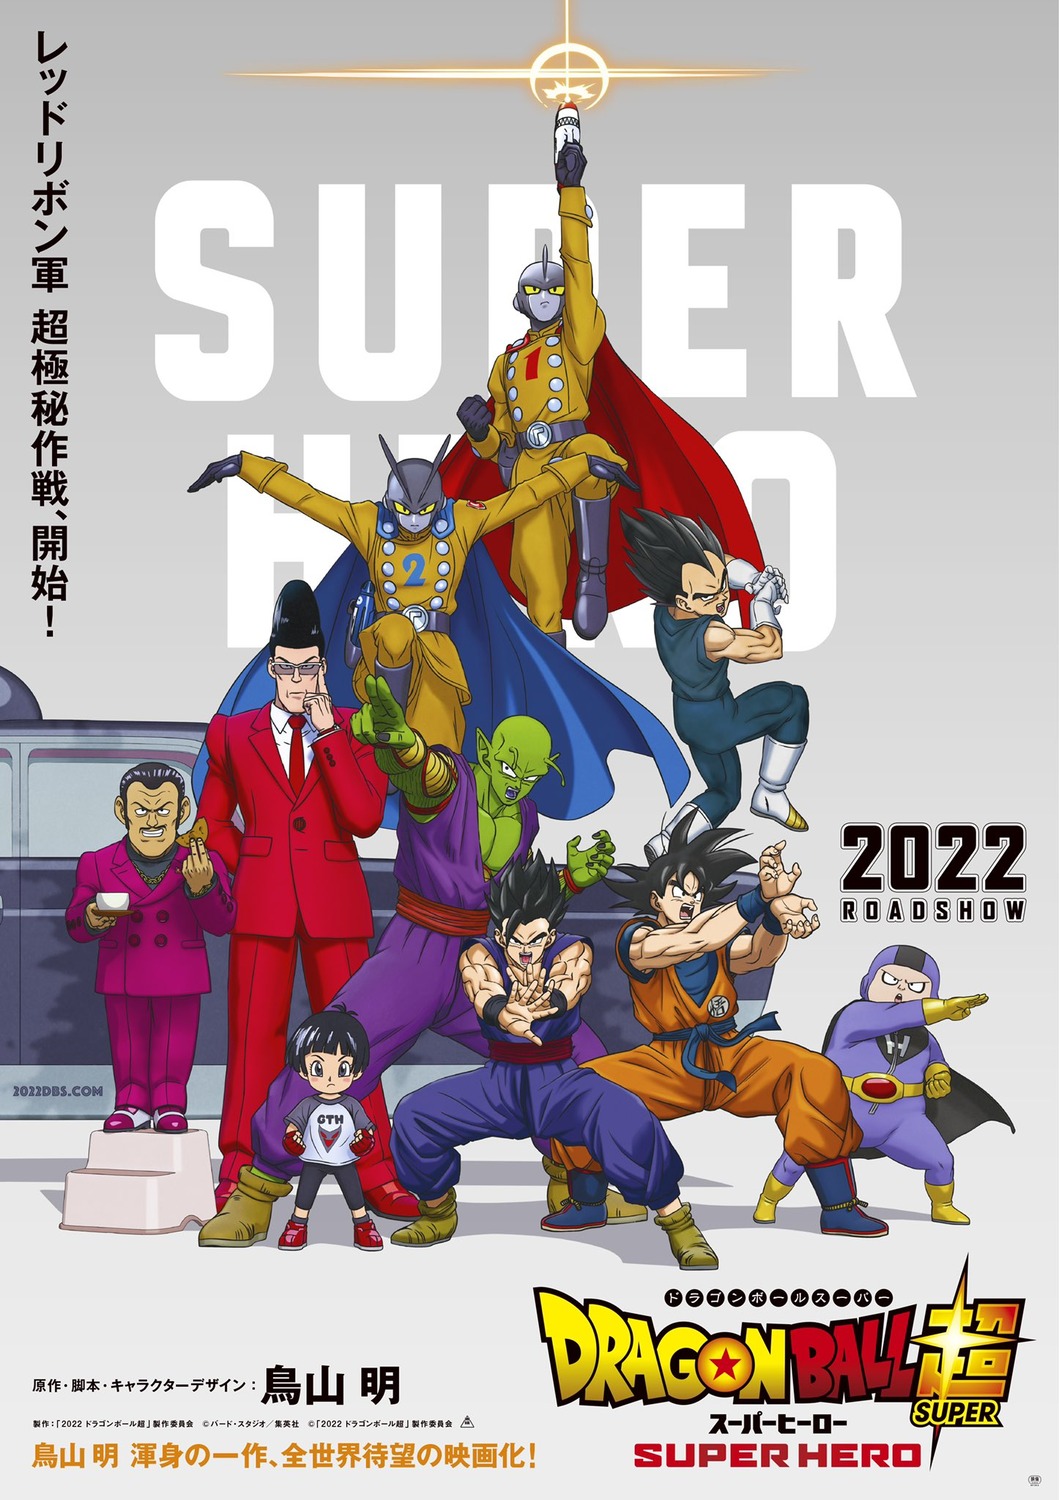 Como 'Dragon Ball Super: Super Hero' foi parar no topo das bilheterias -  23/08/2022 - UOL Splash